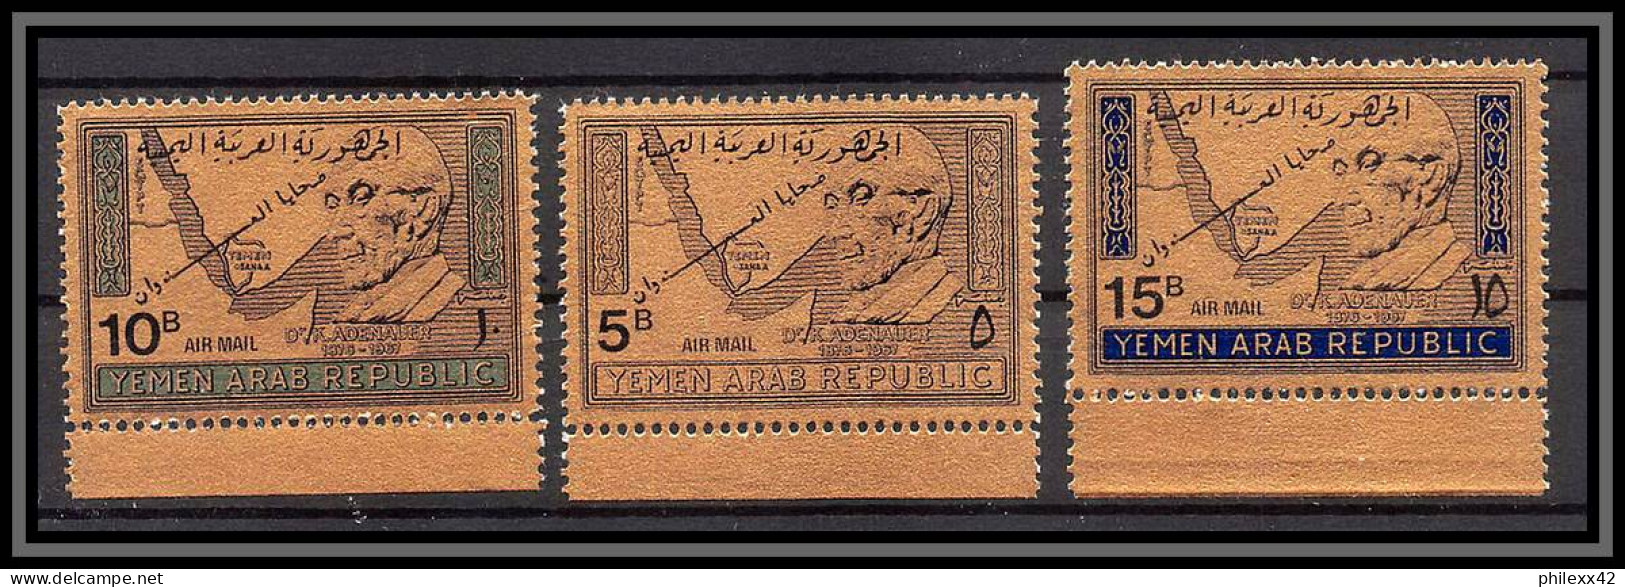 Nord Yemen YAR - 3989/ N°734/736 Adenauer Overprint OR Gold Stamps Neuf ** MNH 1968 Cote 15 Euros - Yémen